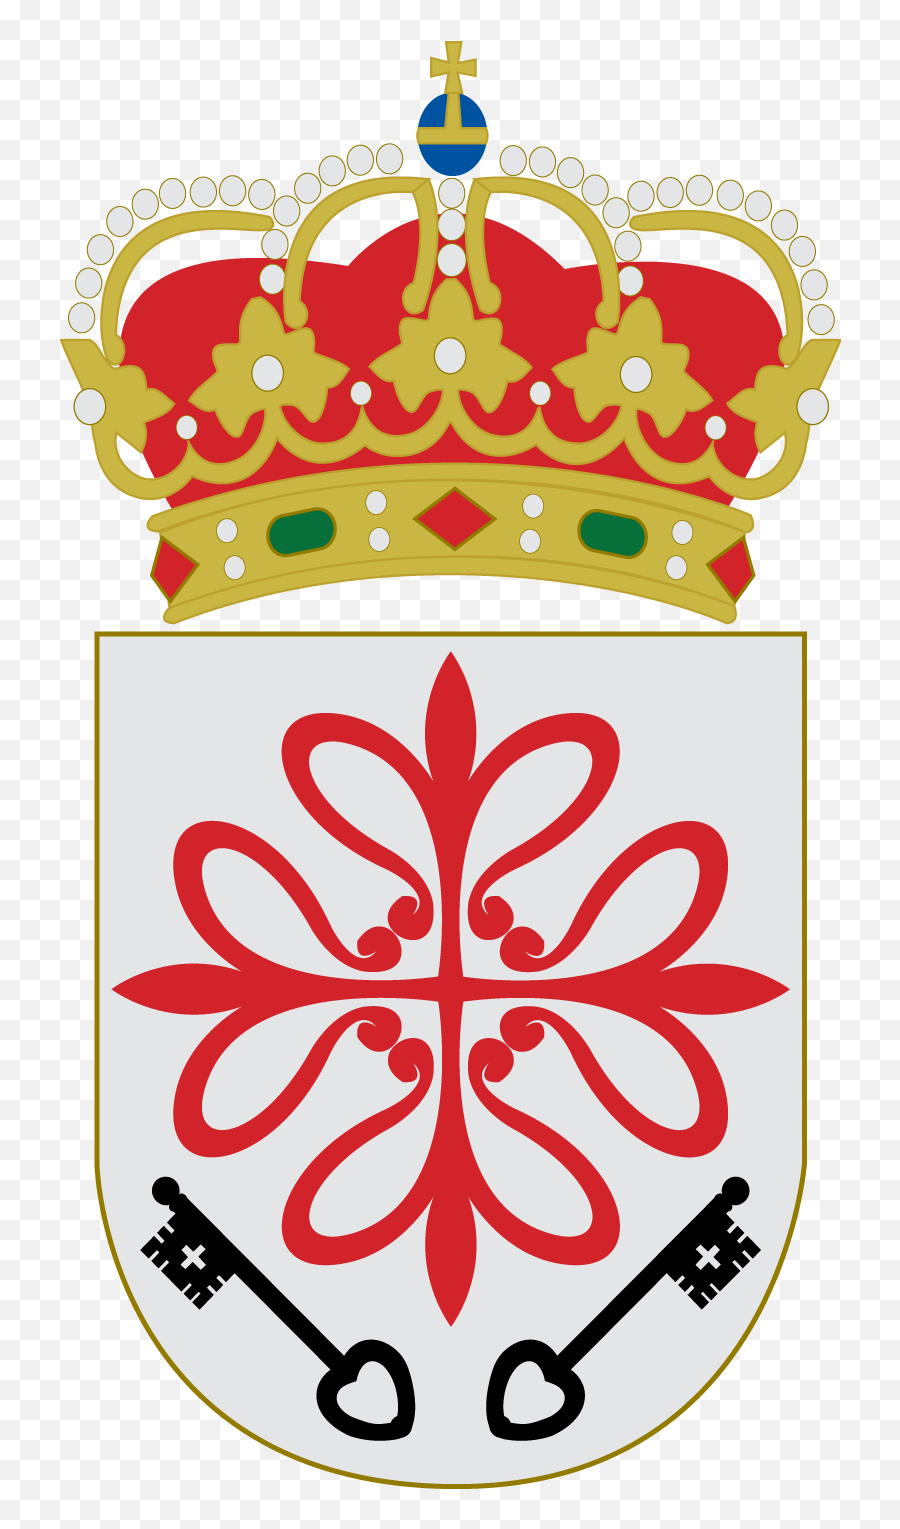 Fileescudo De Aldea Del Reypng - Wikimedia Commons Ayuntamiento De Ciudad Real,Rey Png